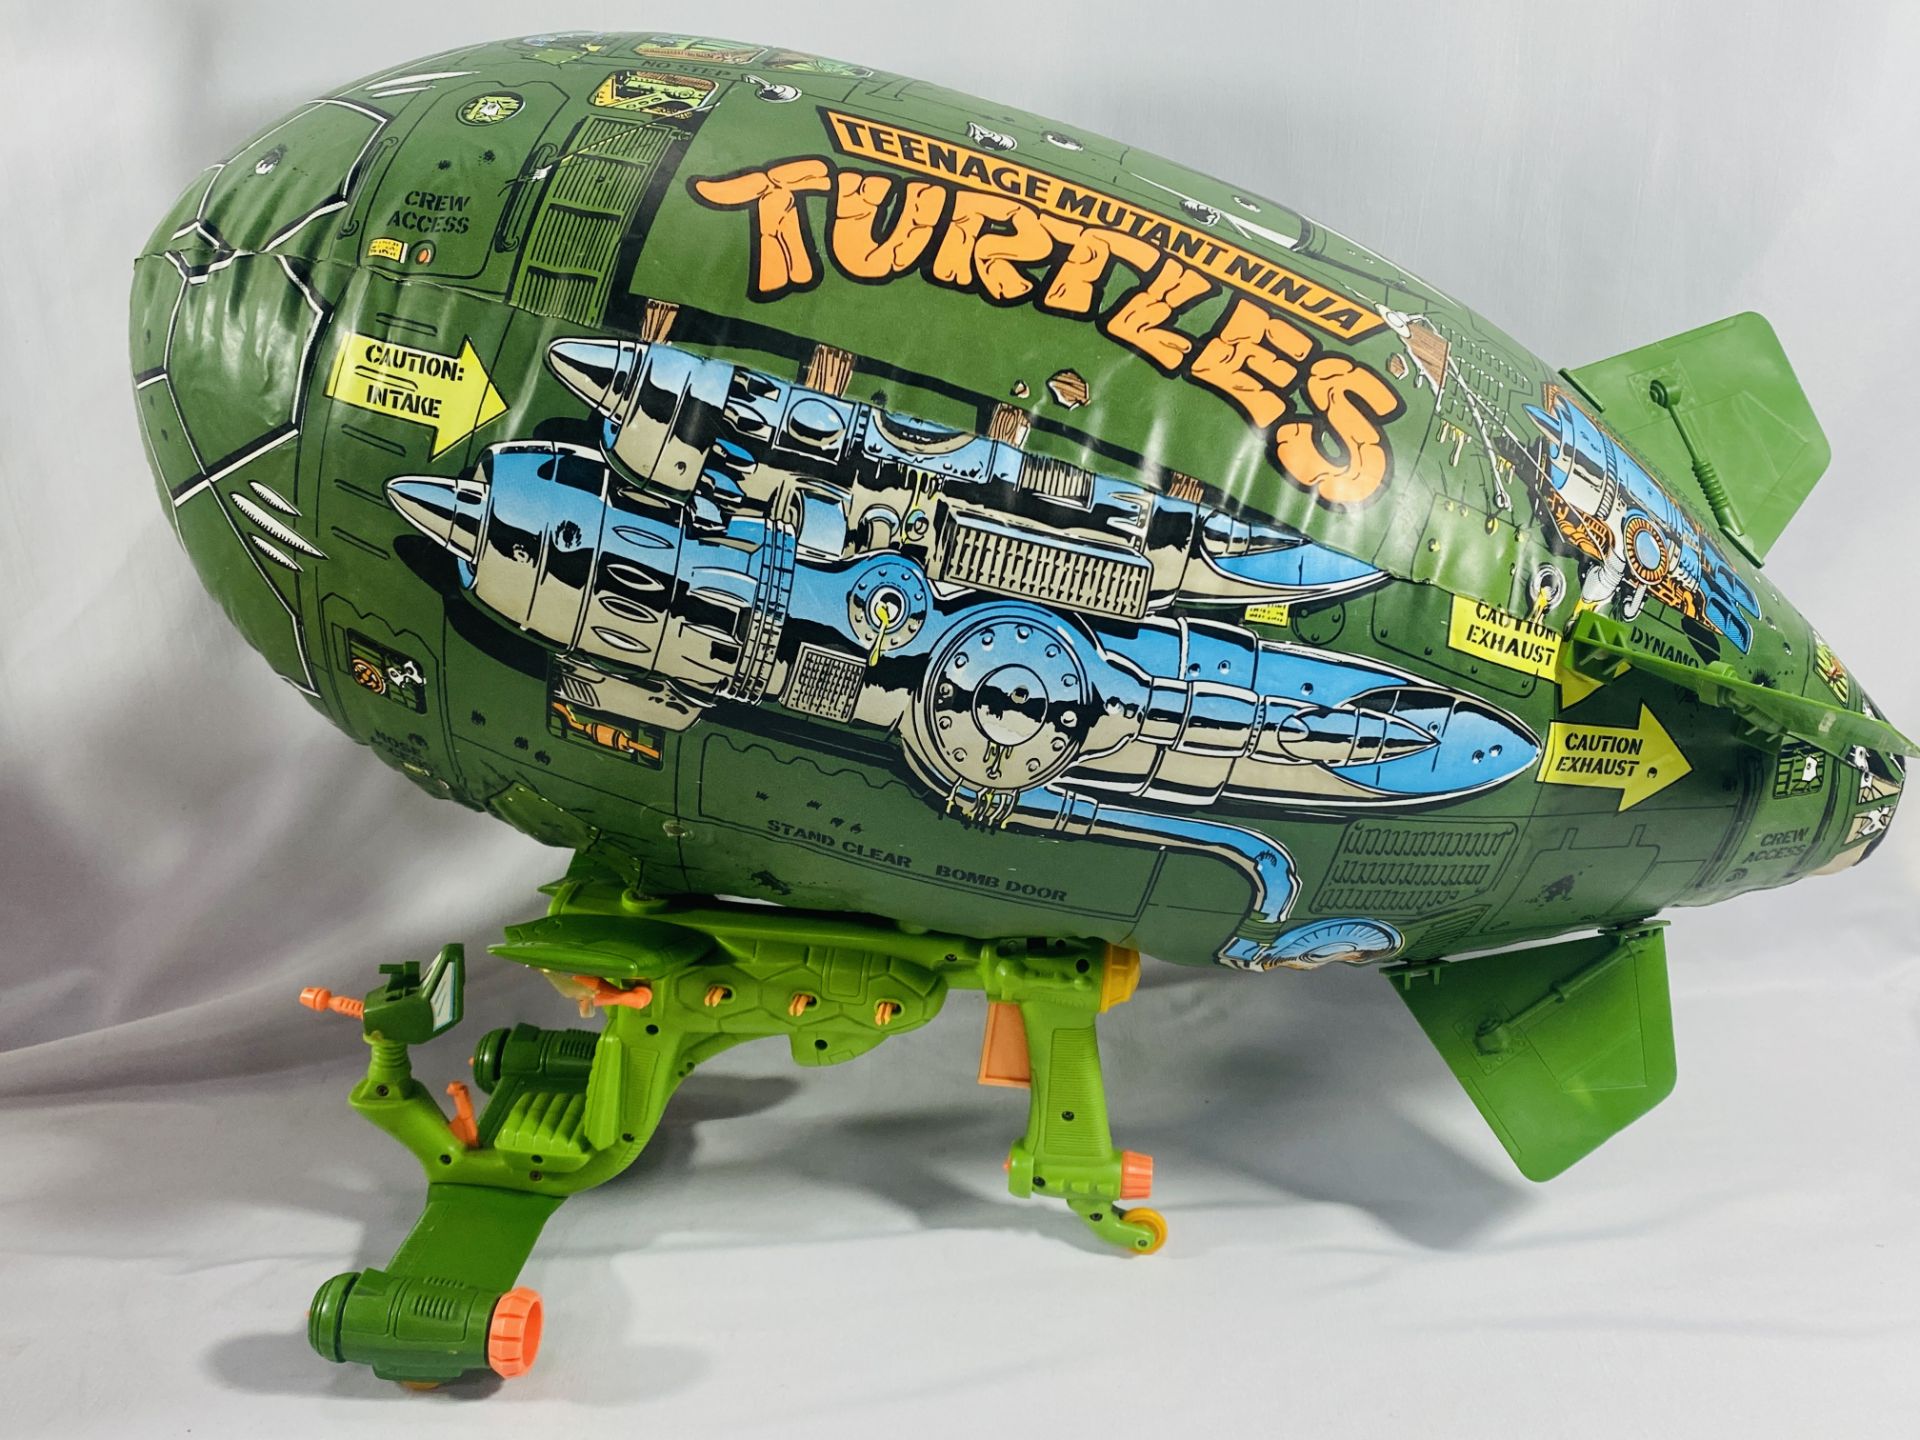 Teenage Mutant Ninja Turtles toys - Image 3 of 6